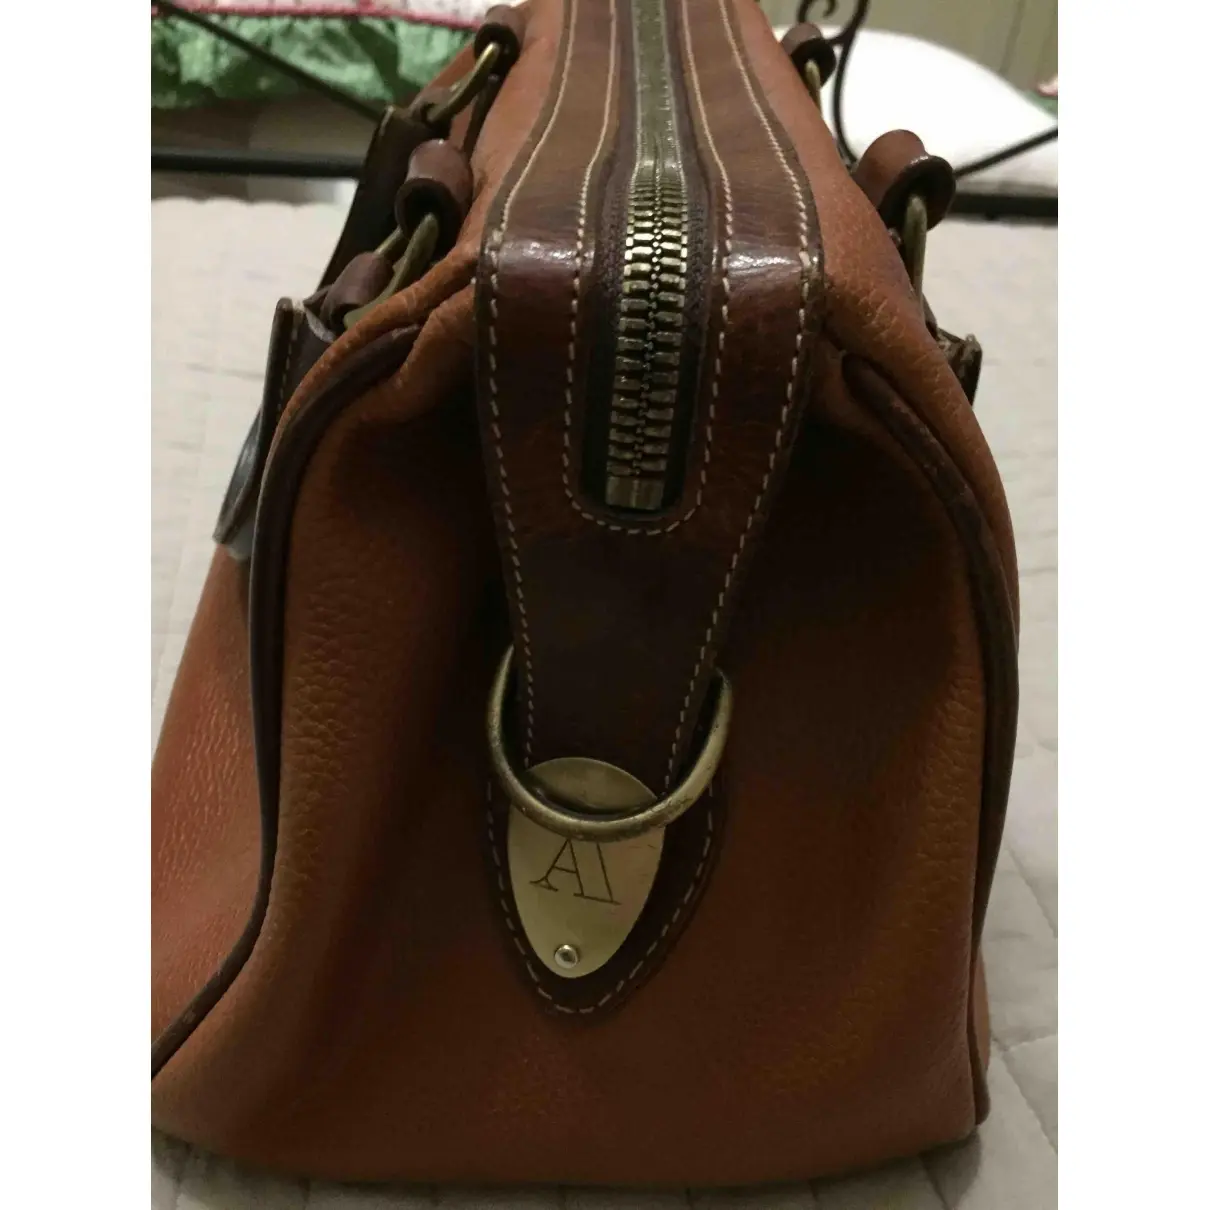 Leather handbag Aquascutum - Vintage